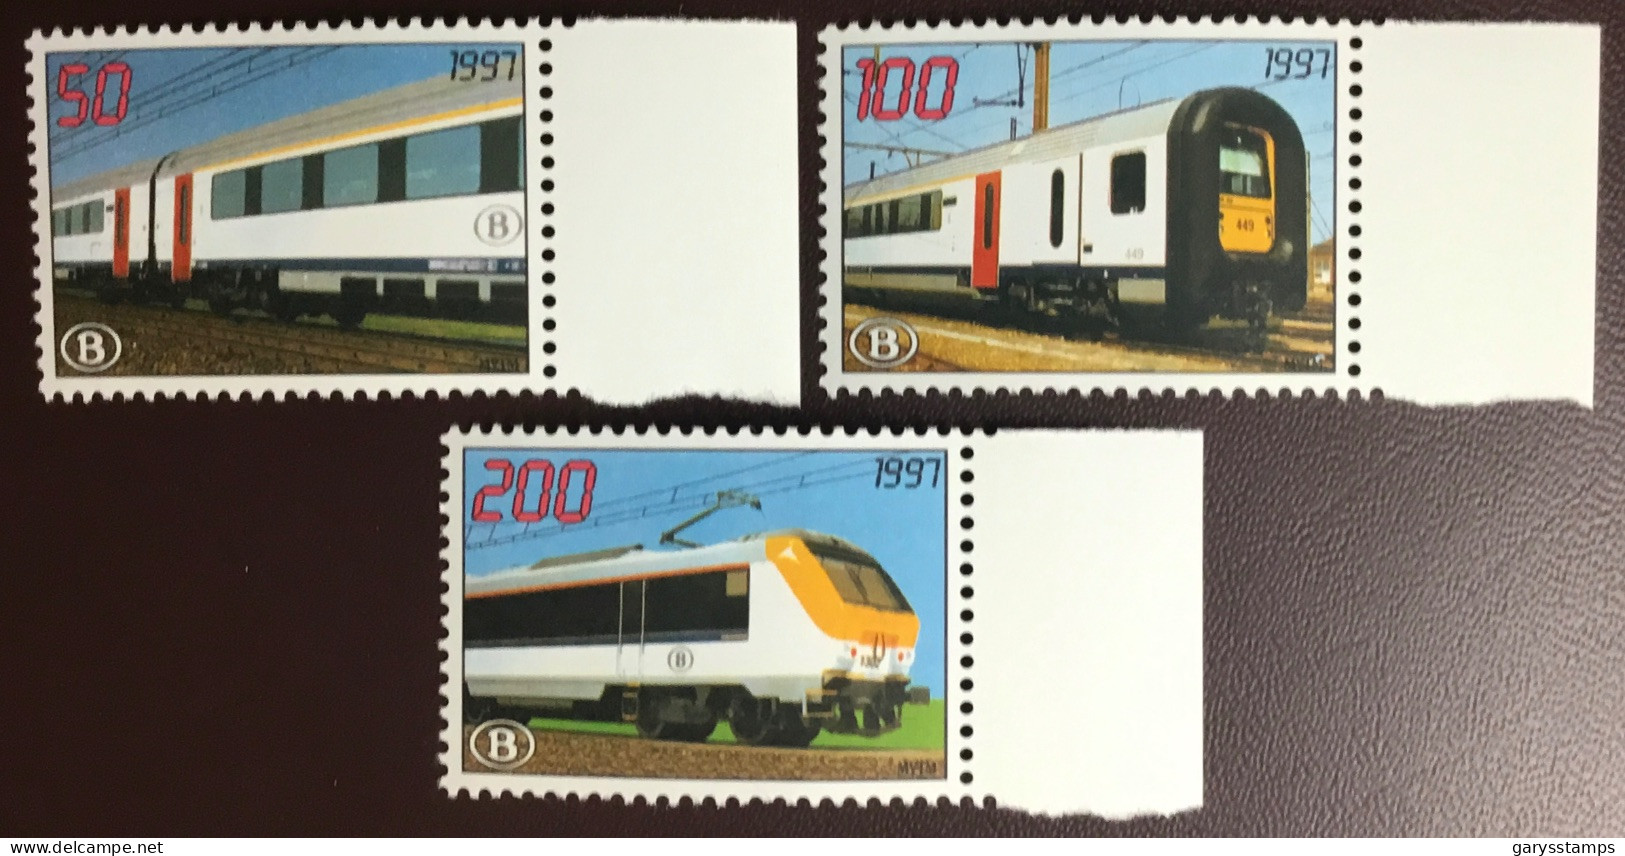 Belgium 1997 Modernisation Railway Stamps Set MNH - 1996-2013 Vignettes [TRV]